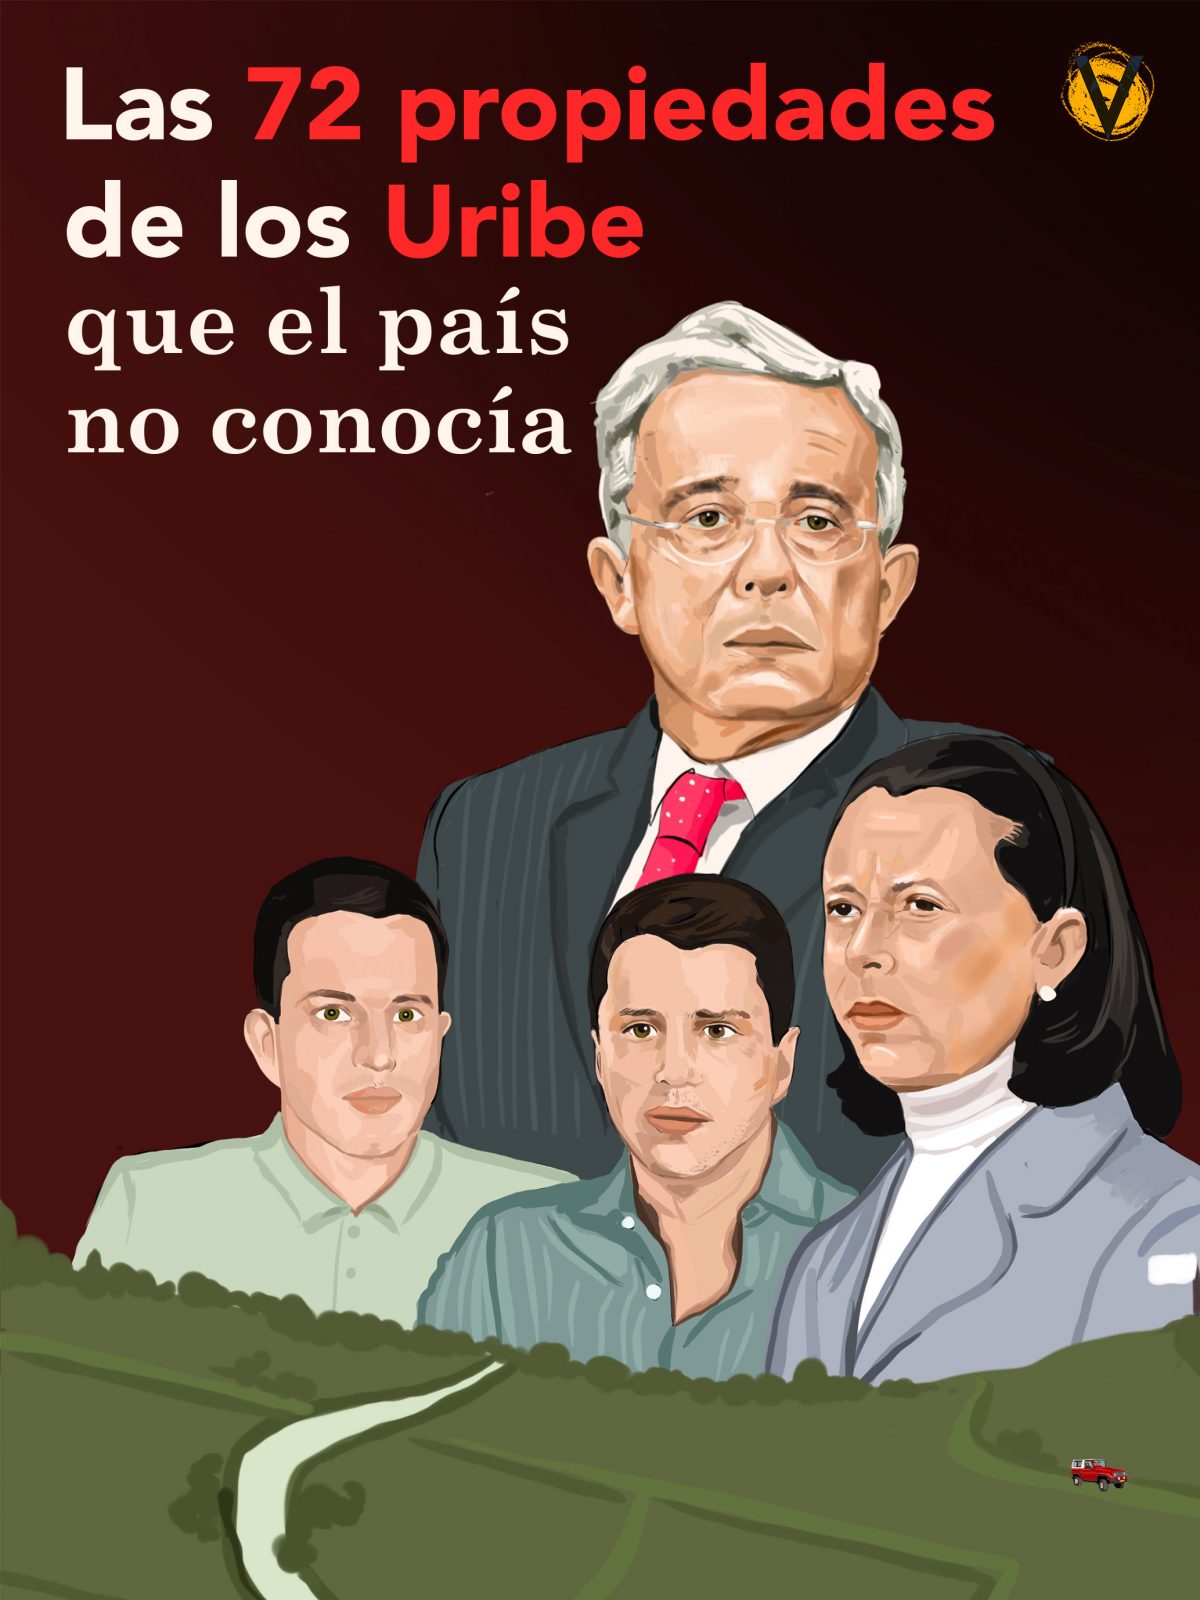 Voragine las 72 tierras propiedades de la familia Uribe